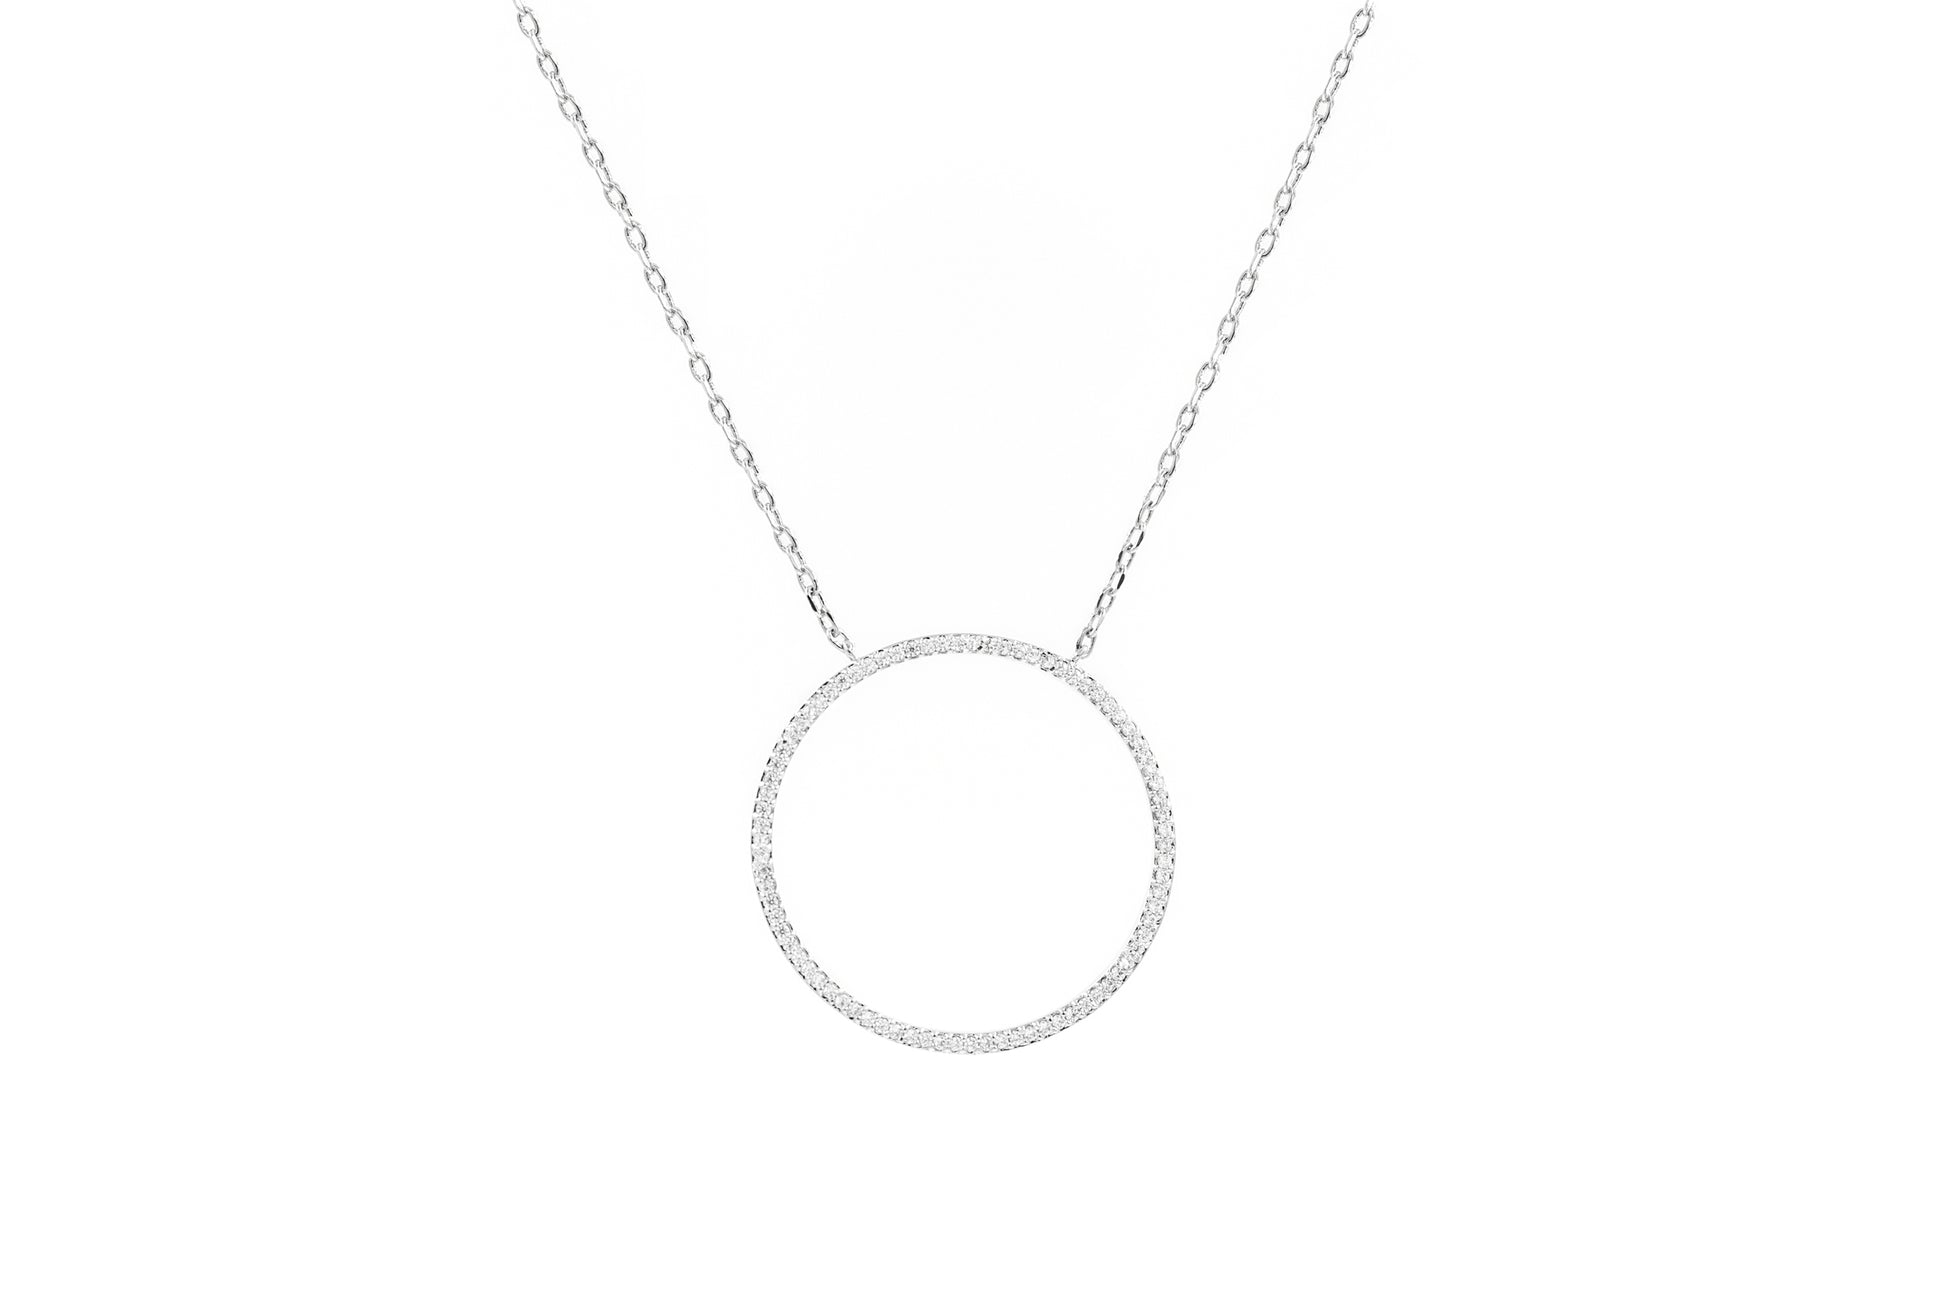 Halskette mit Kreis-Anhänger aus Silber/Zirkonia